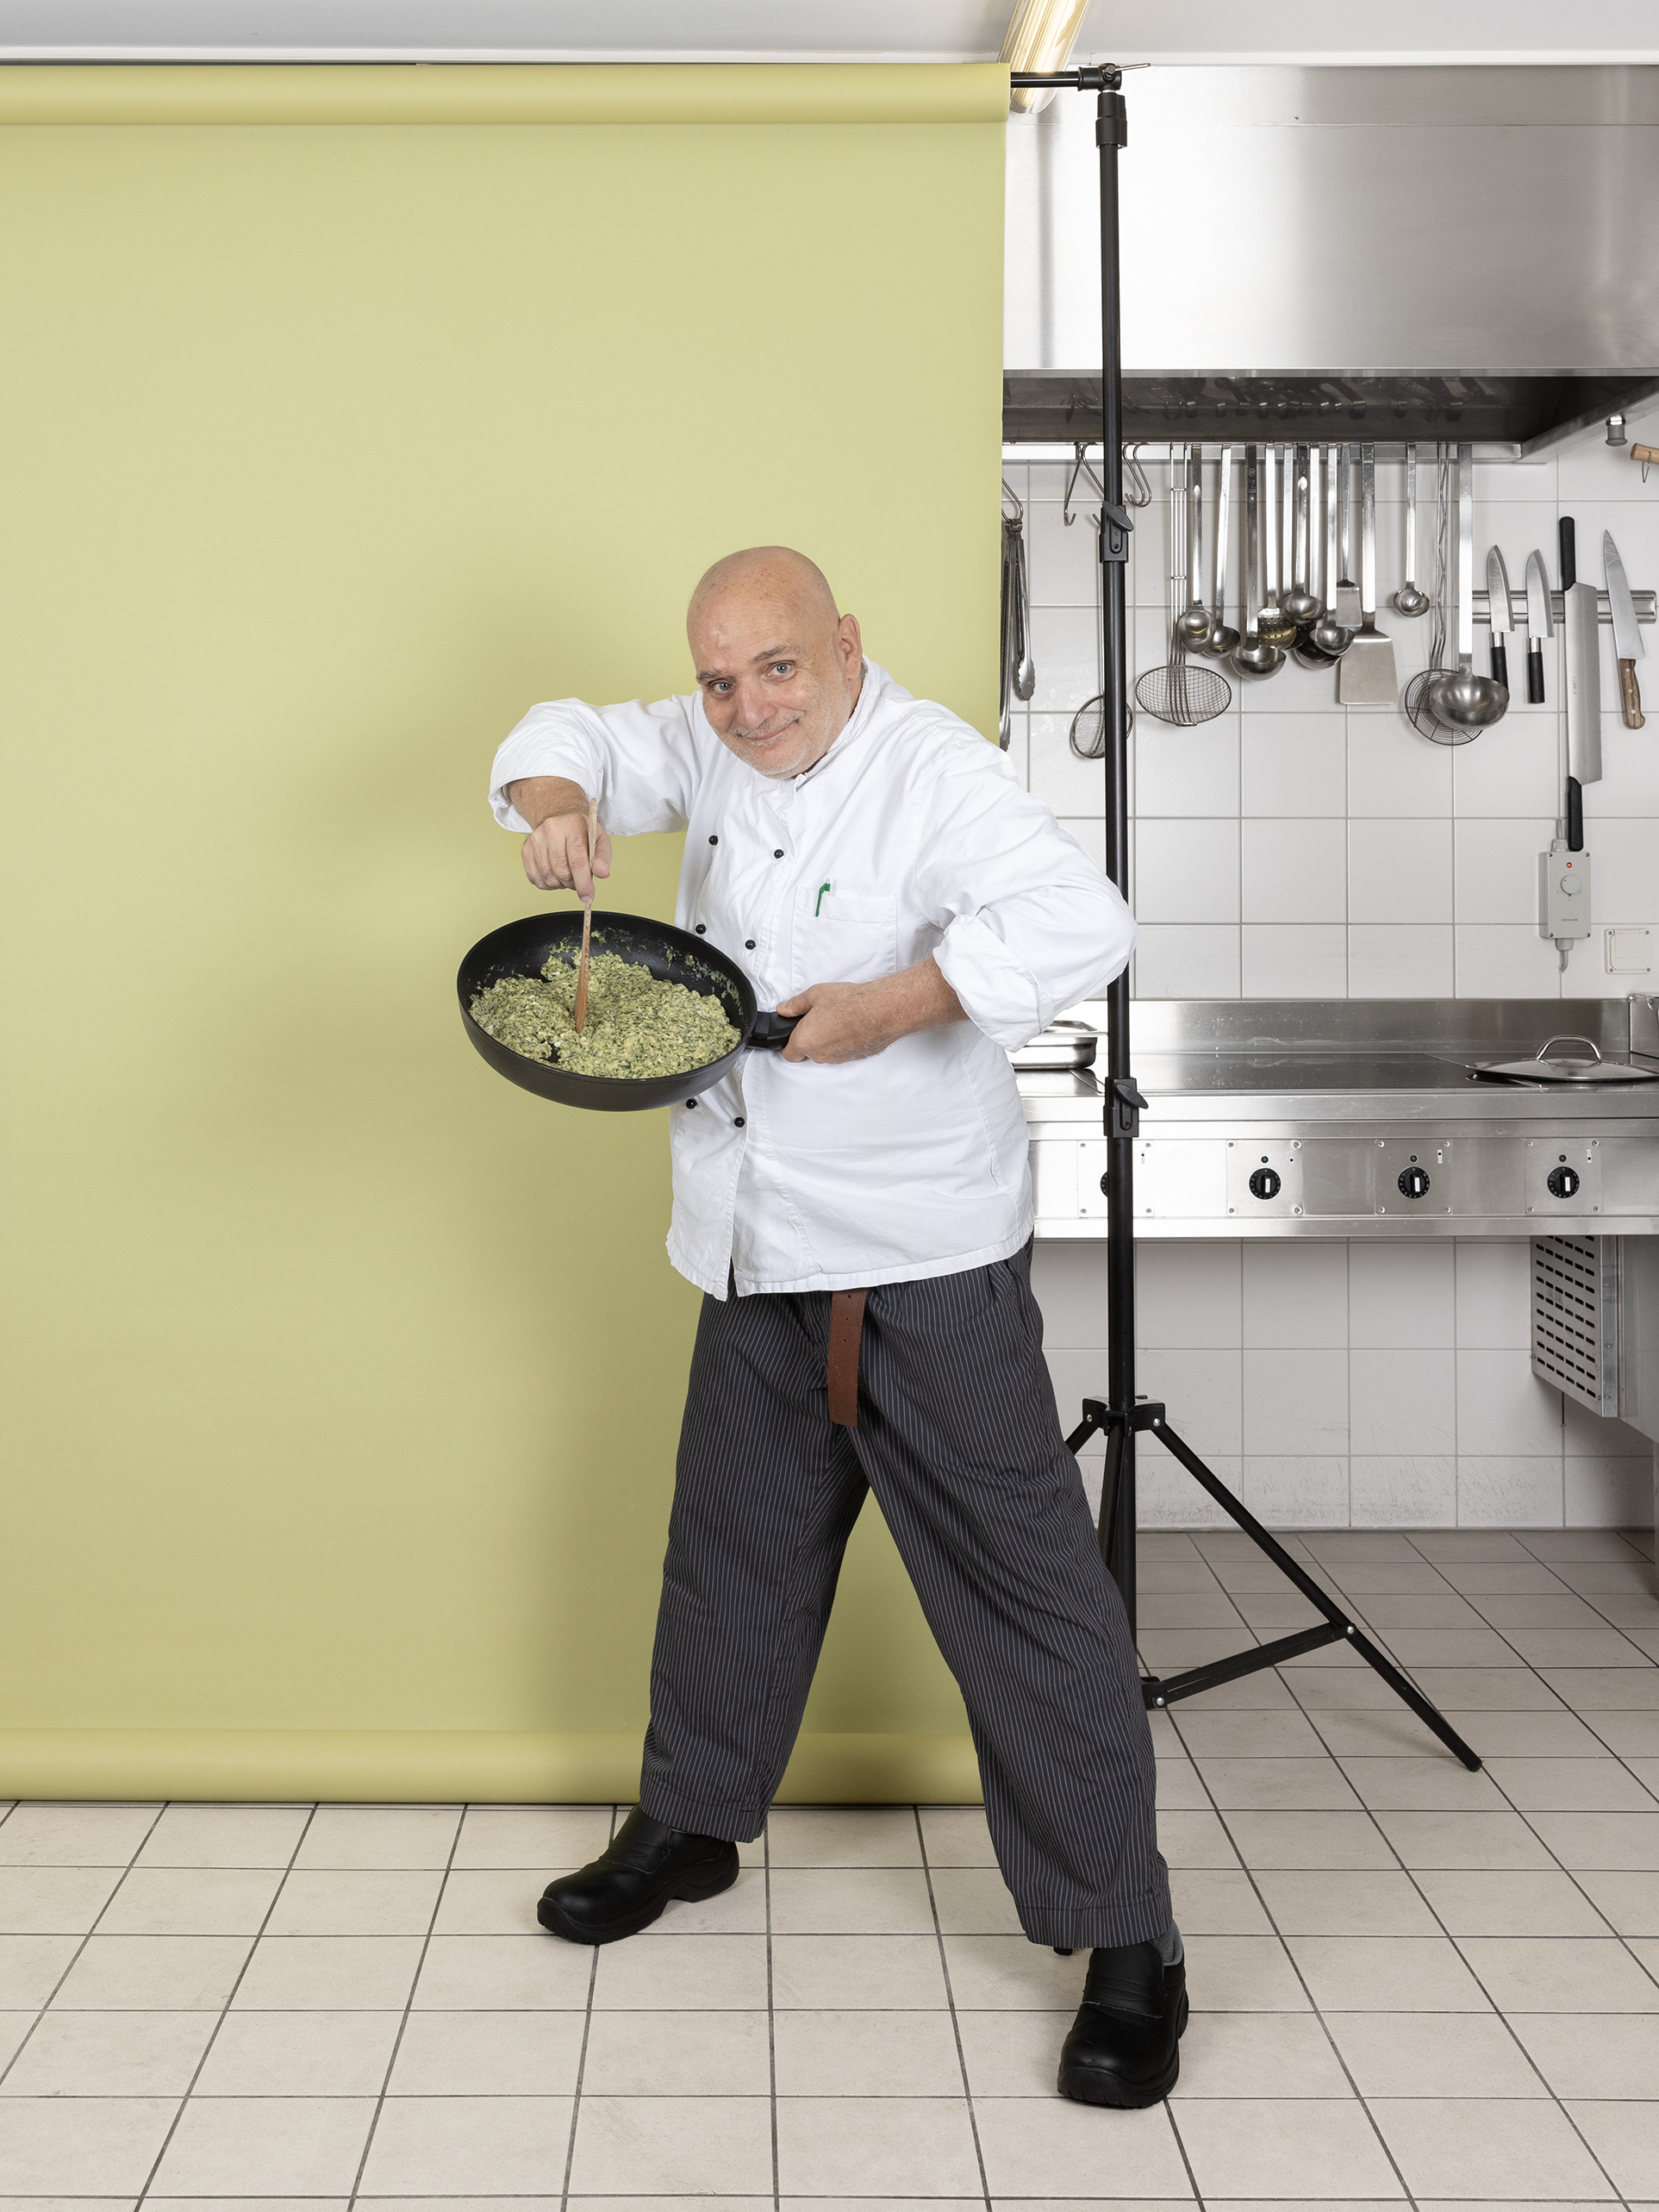 Ein Foto aus dem Buch "Ohne Milch und Zucker". André Karlen steht vor einer hellgrünen Leinwand und hält eine Pfanne hoch.